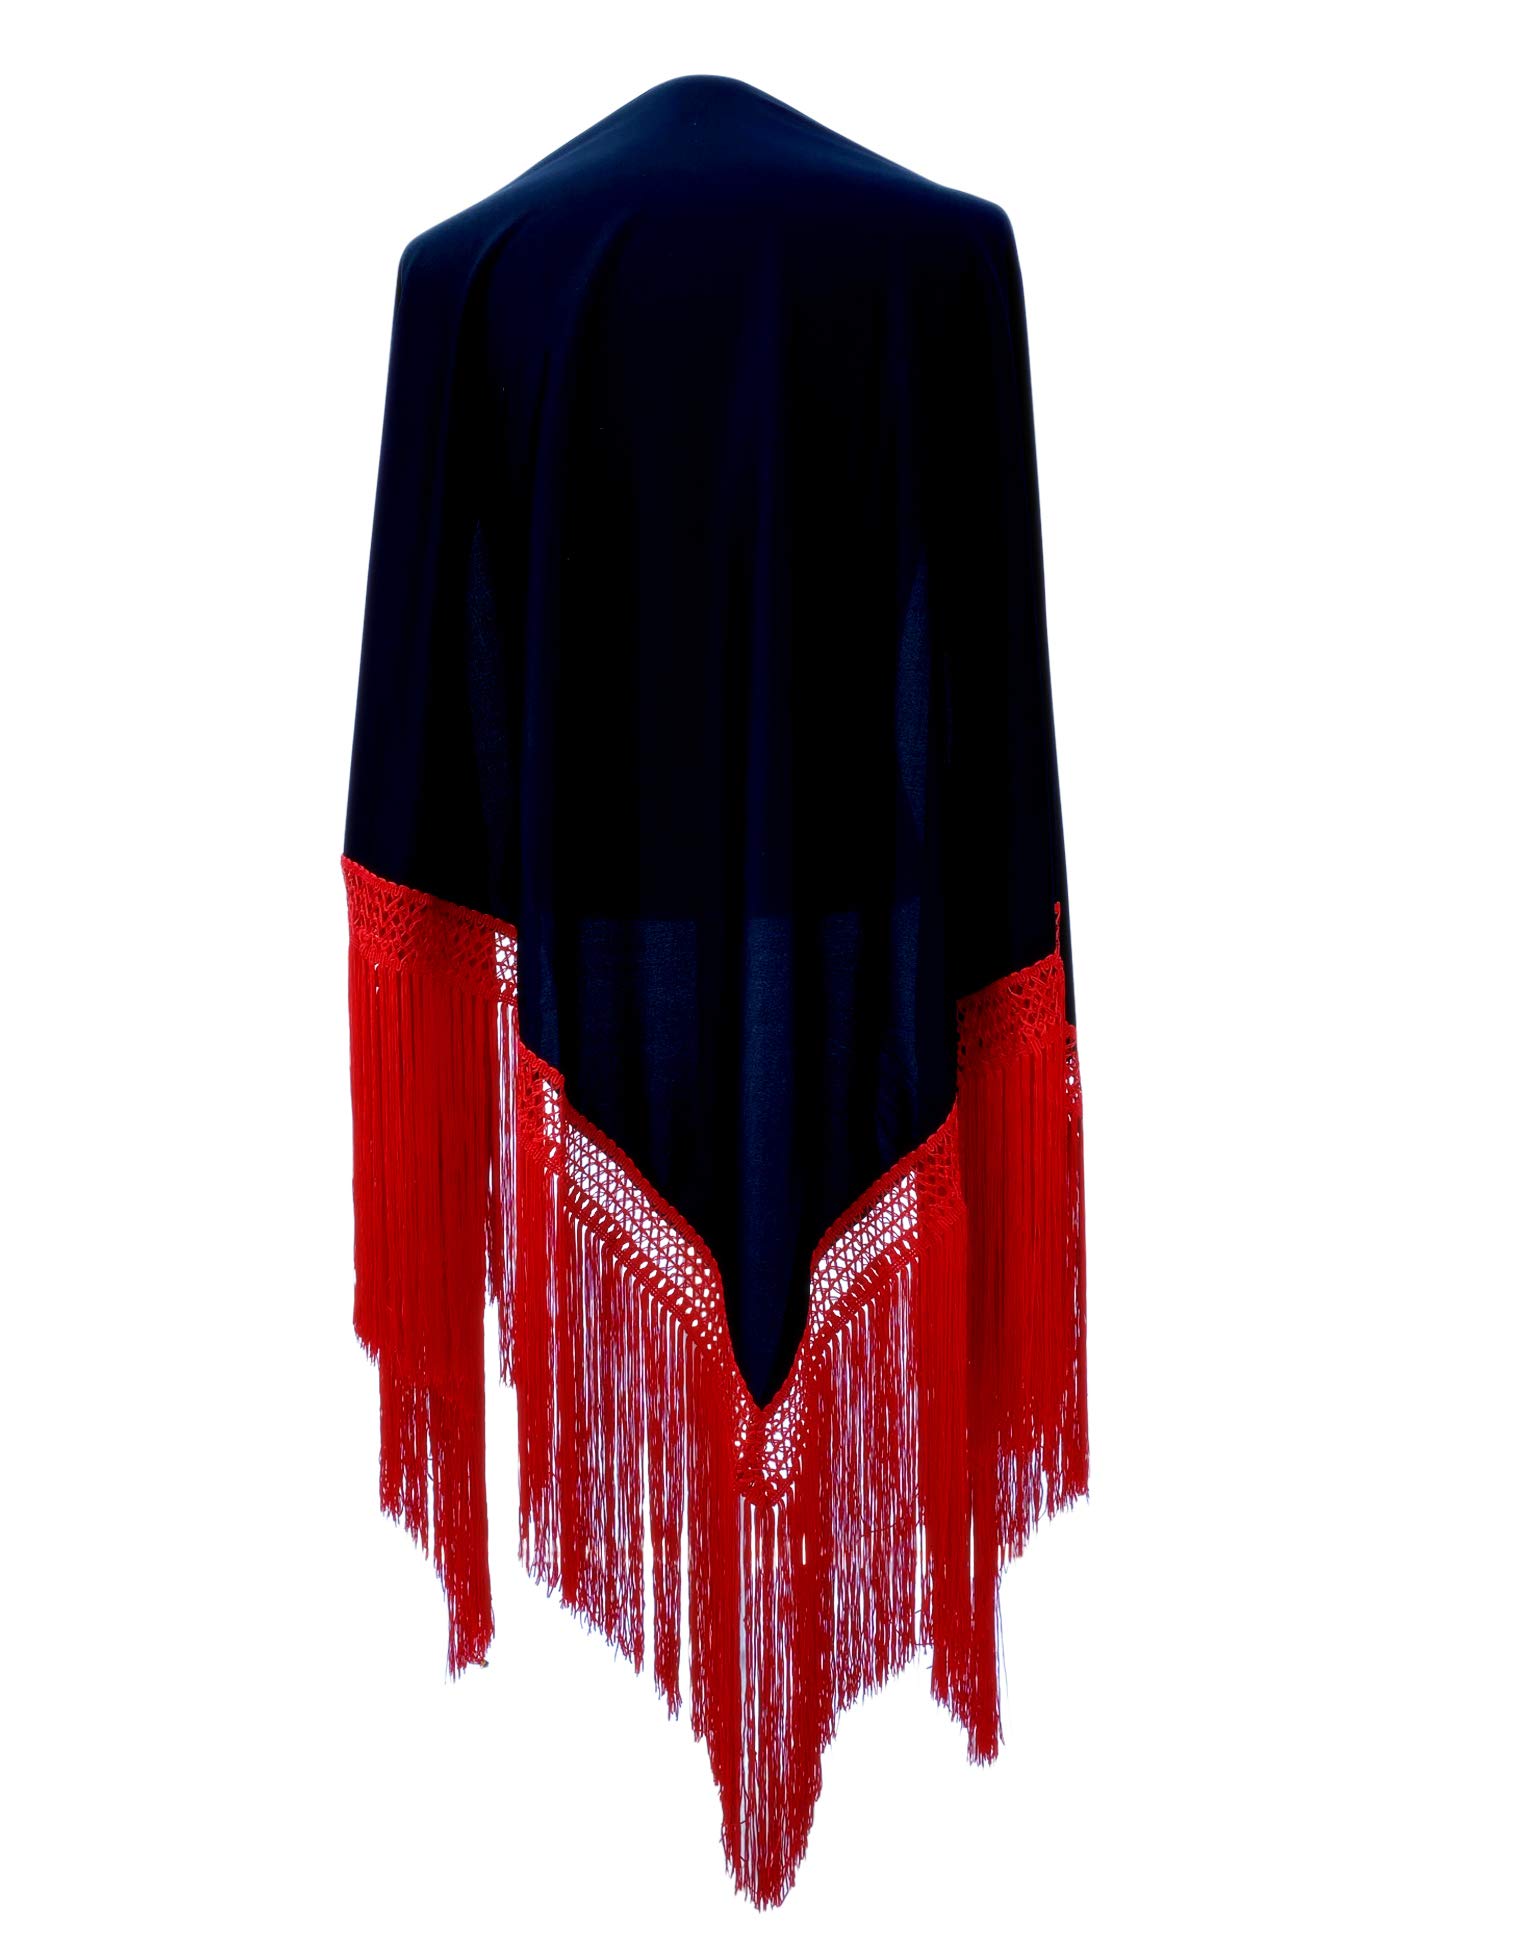 La Senorita Spanischer Manton Tuch Schal schwarz einfarbig mit roten Fransen Größe: Large 190 * 90 cm für Damen